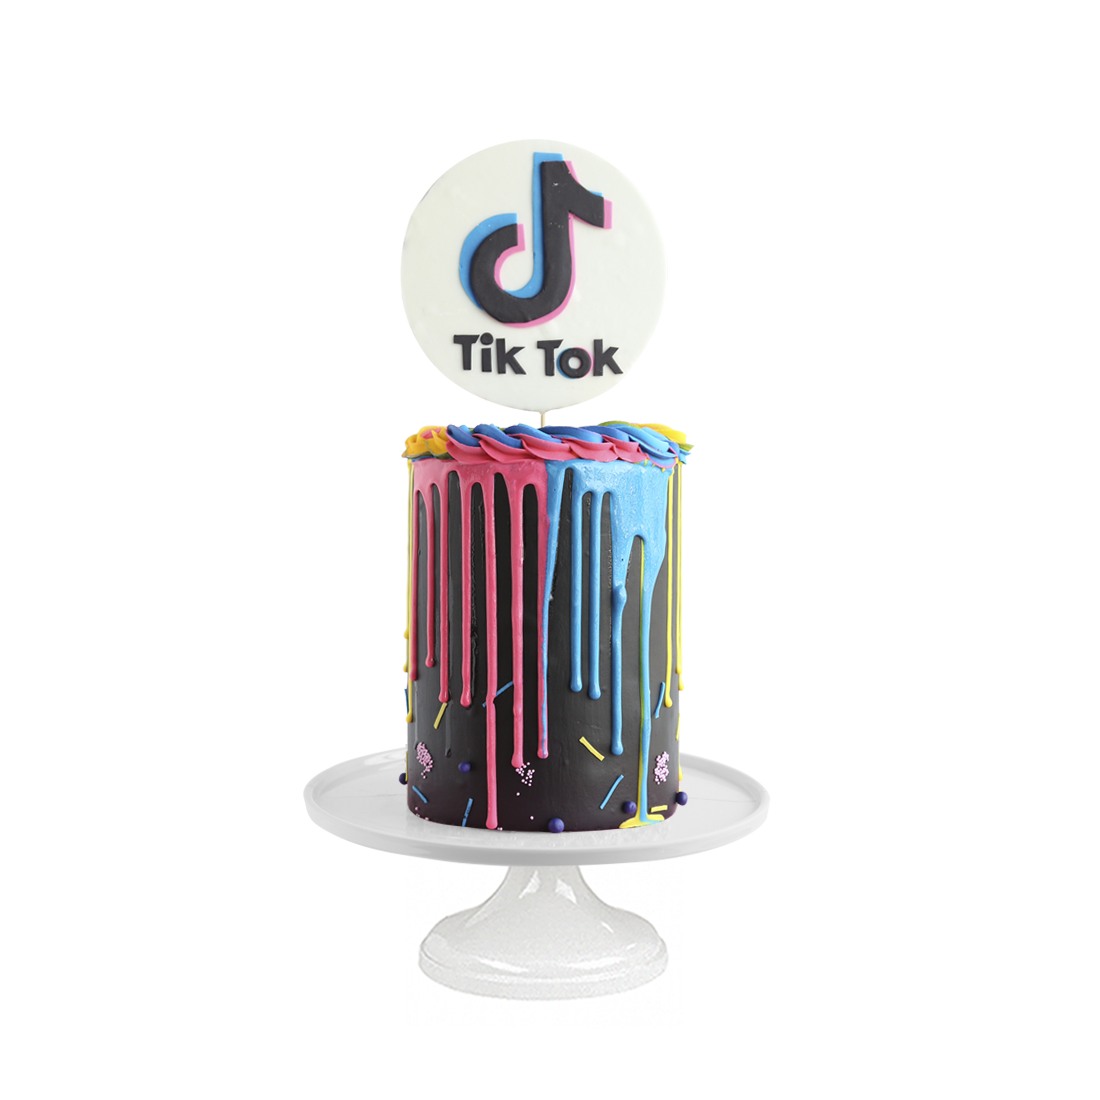 Tik Tok Cake, pastel decorado para los fans y creadores